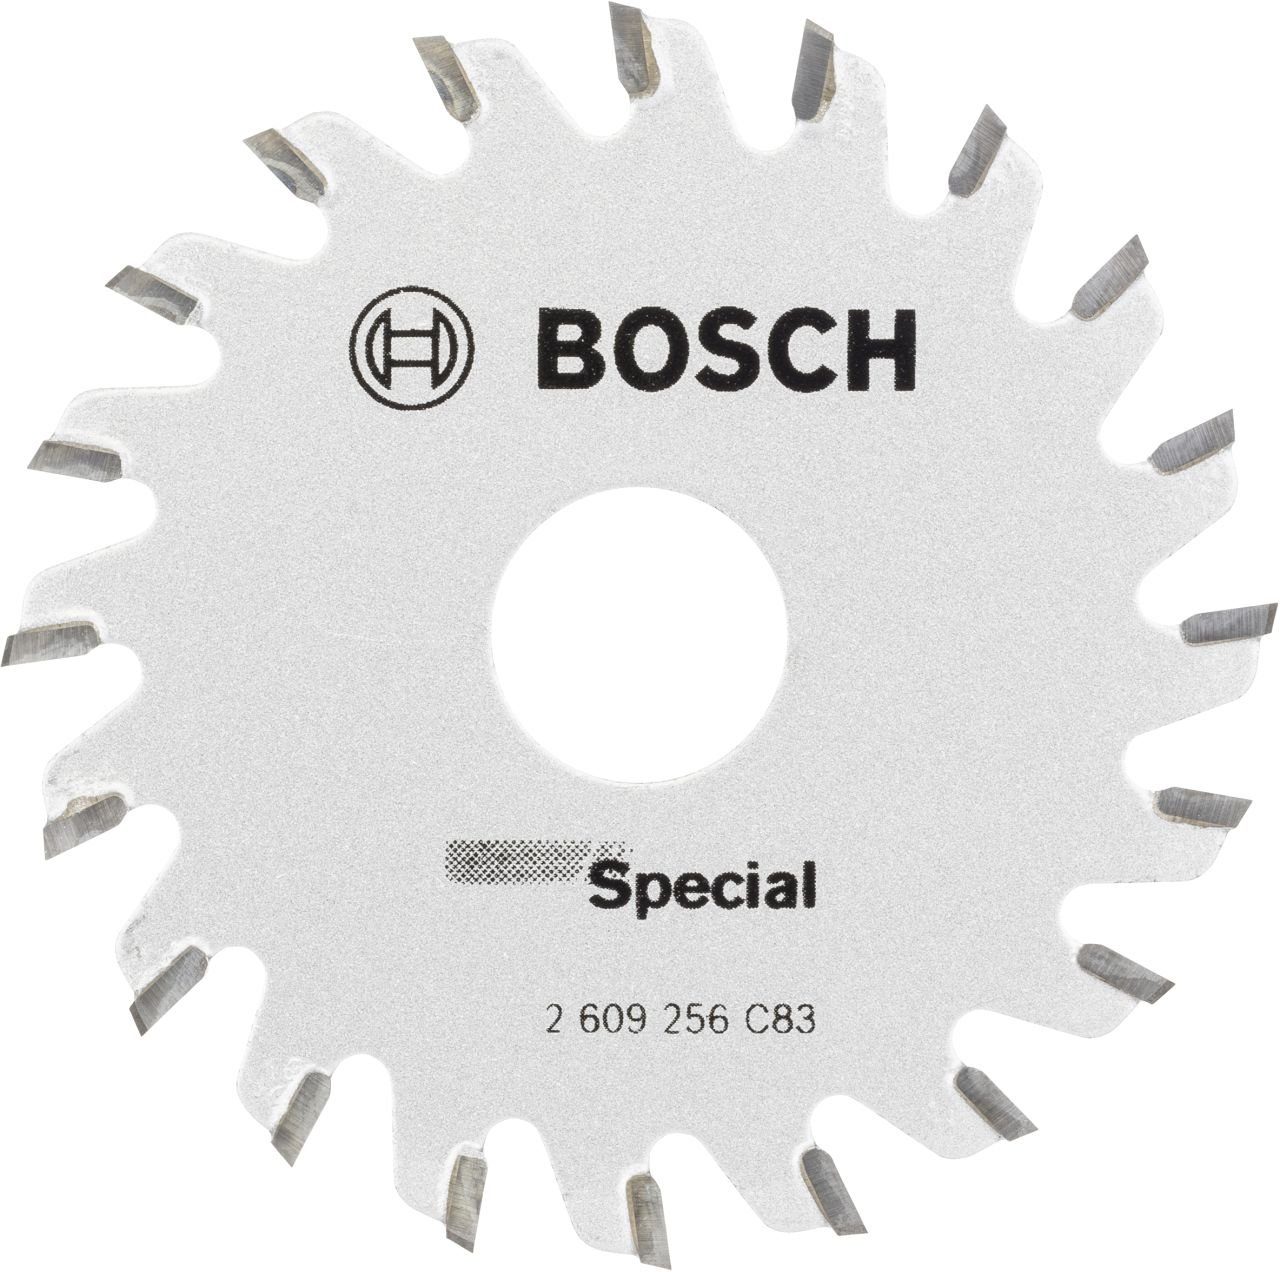 BOSCH Kreissägeblatt Bosch Kreissägeblatt Special Ø 65 mm Bohrung Ø 15